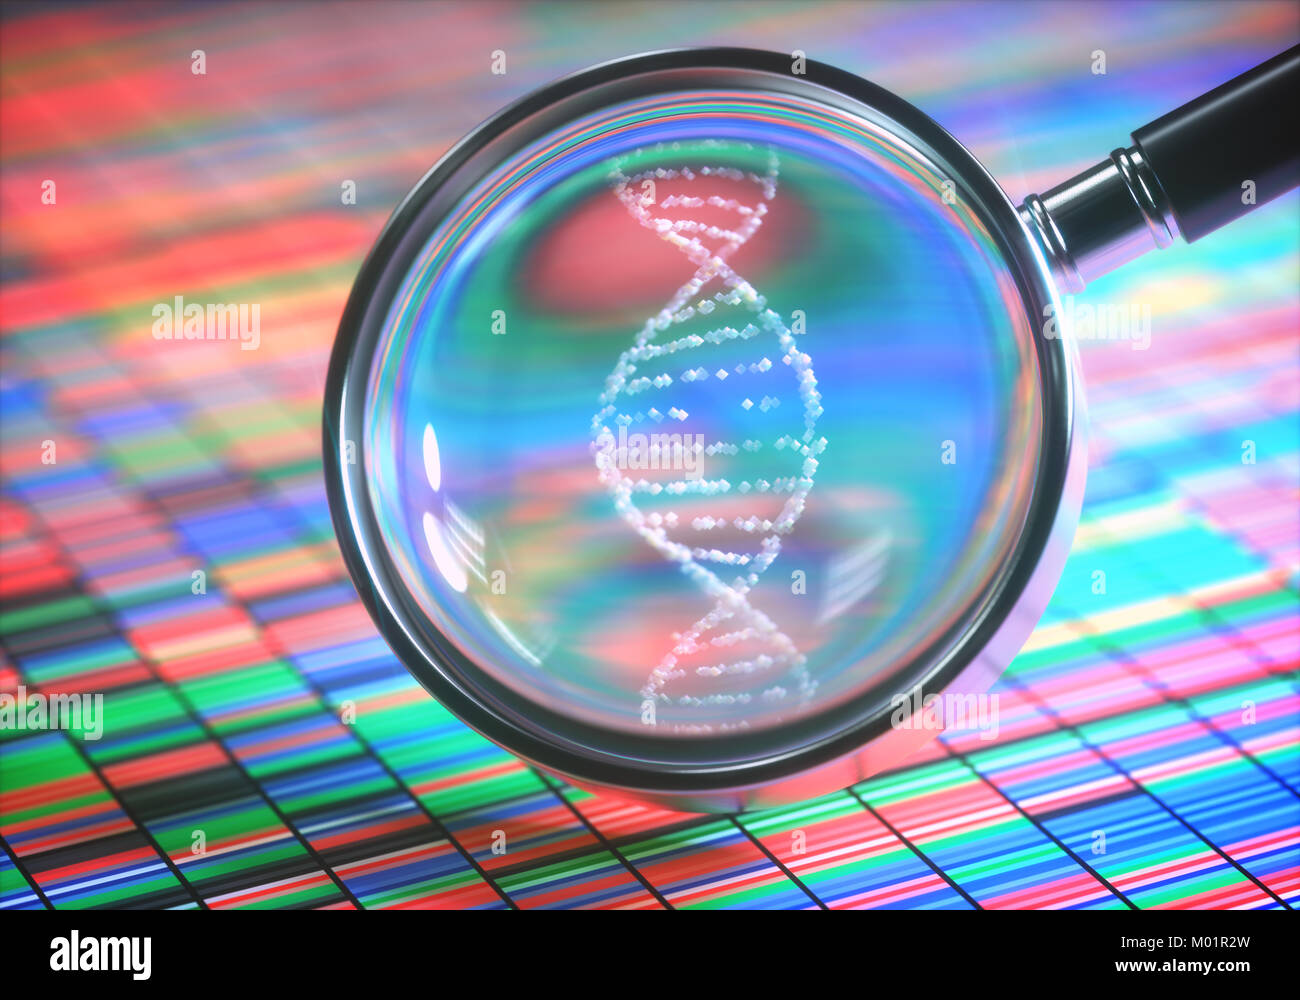 3D'illustrazione. Il DNA di sequenziazione Sanger e una lente di ingrandimento che mostra l'elica di DNA. Foto Stock